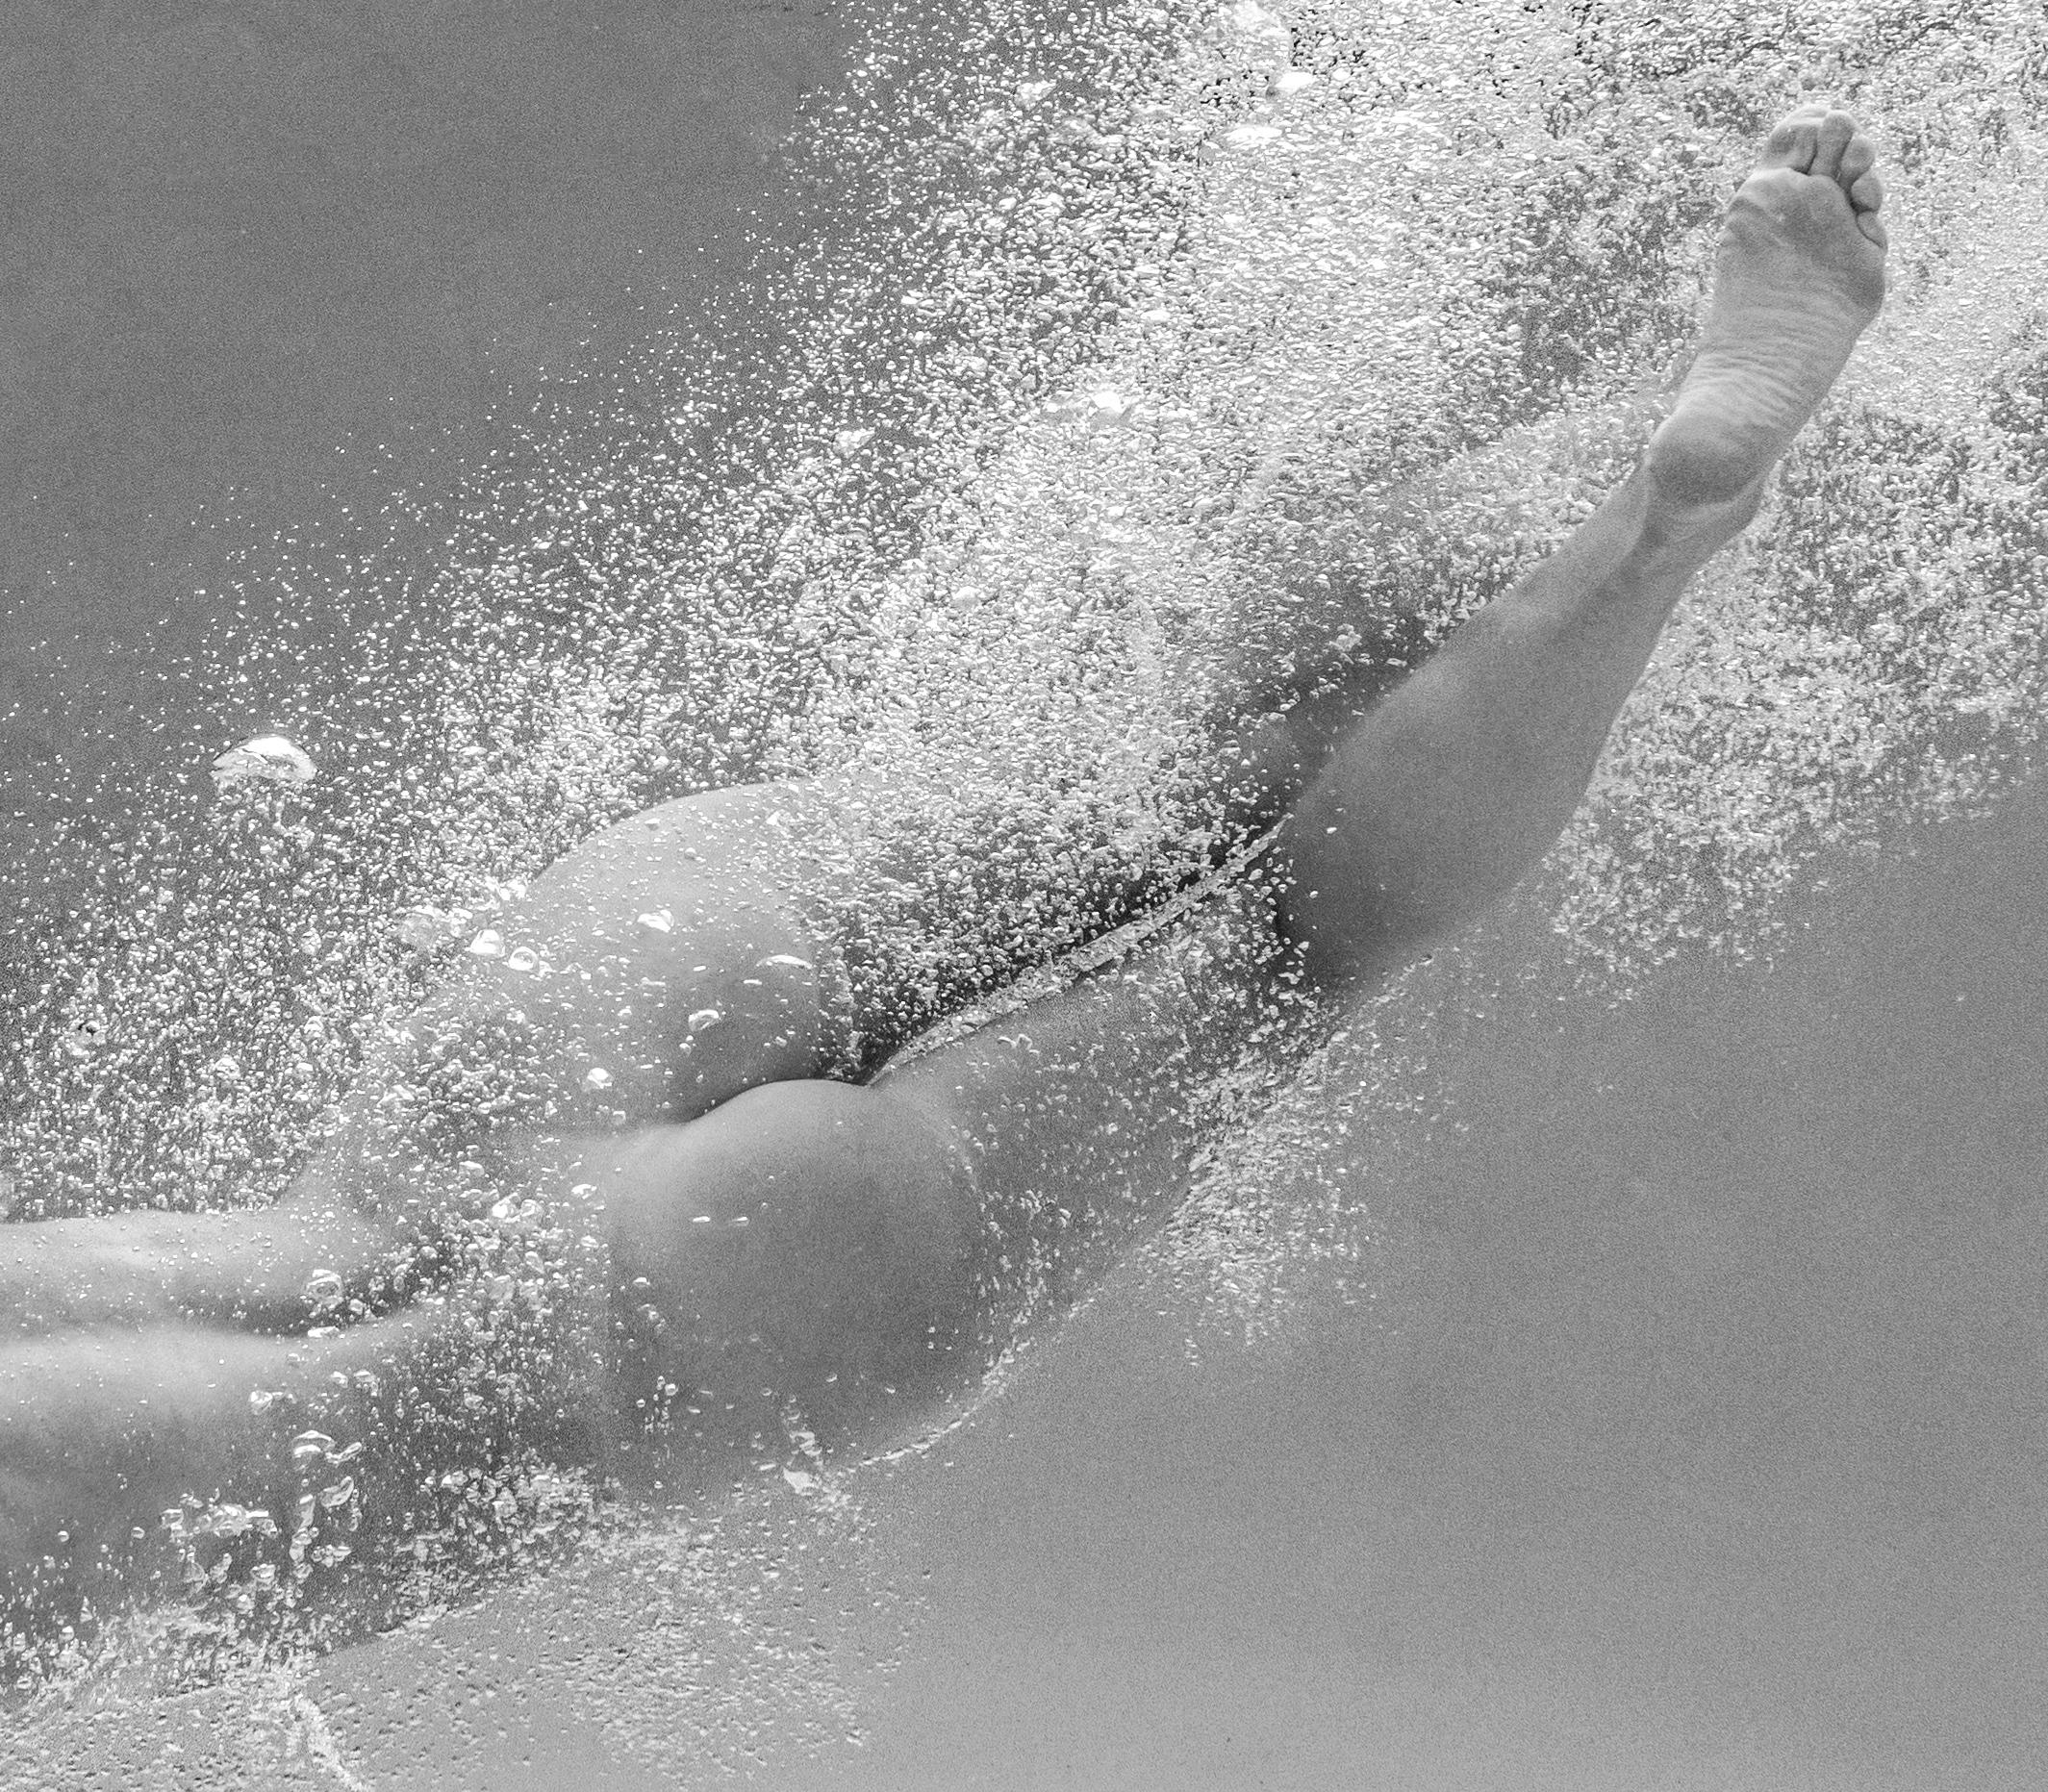 Eine Unterwasser-Schwarz-Weiß-Aufnahme einer jungen nackten Frau in einem Schwimmbecken.  

Original-Pigmentdruck in Galerie-Qualität, archiviert  vom Autor signiert. 
Limitierte Auflage von 24 Stück
Papierformat: 36